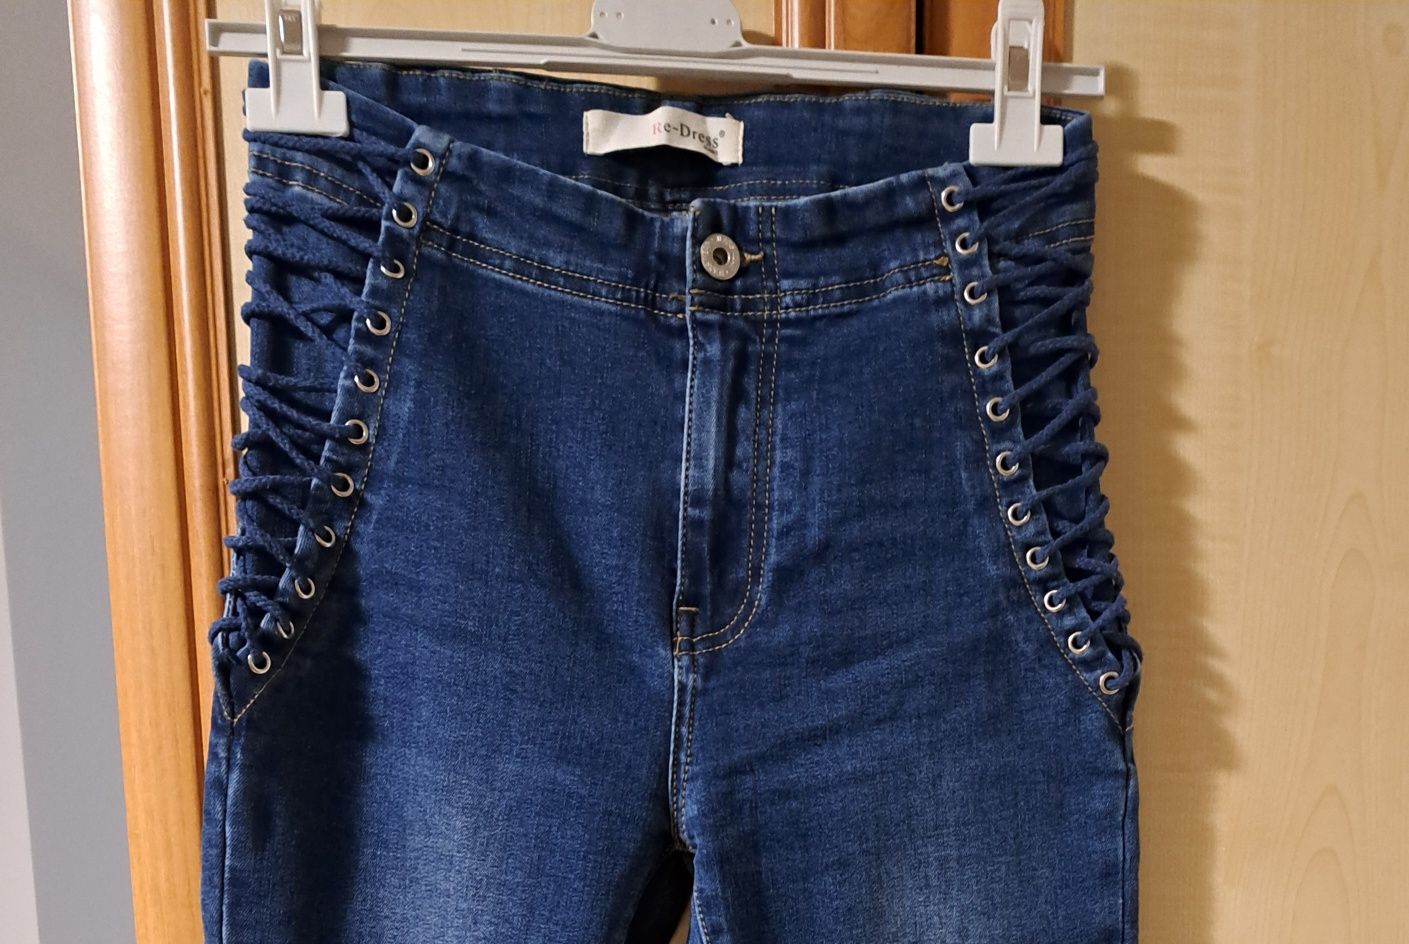 Ciekawy model jeansow ze sznurkami